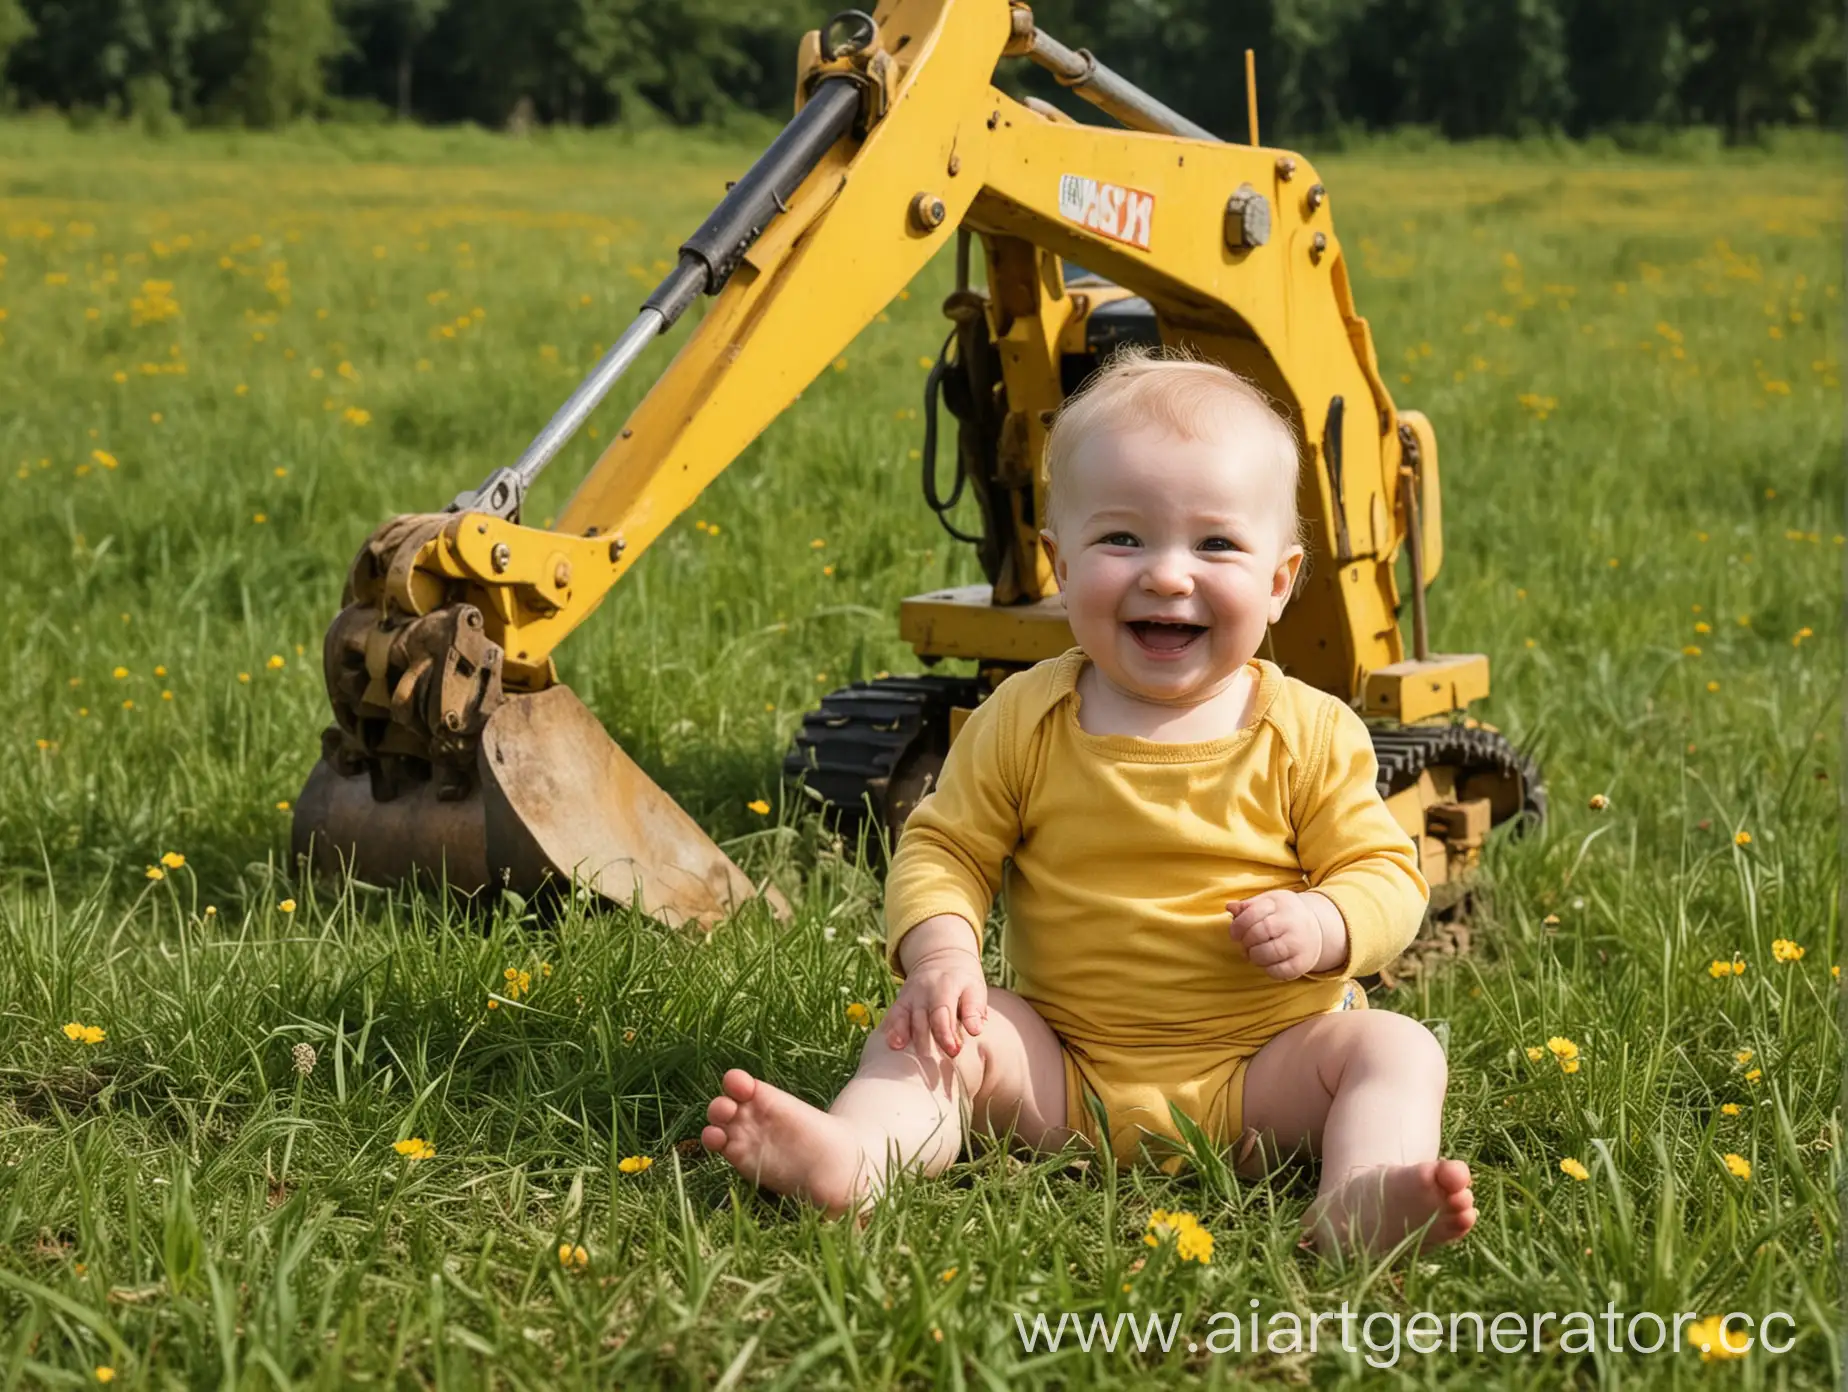 Младенец в поле на траве смеётся, на заднем фоне жёлтый экскаватор